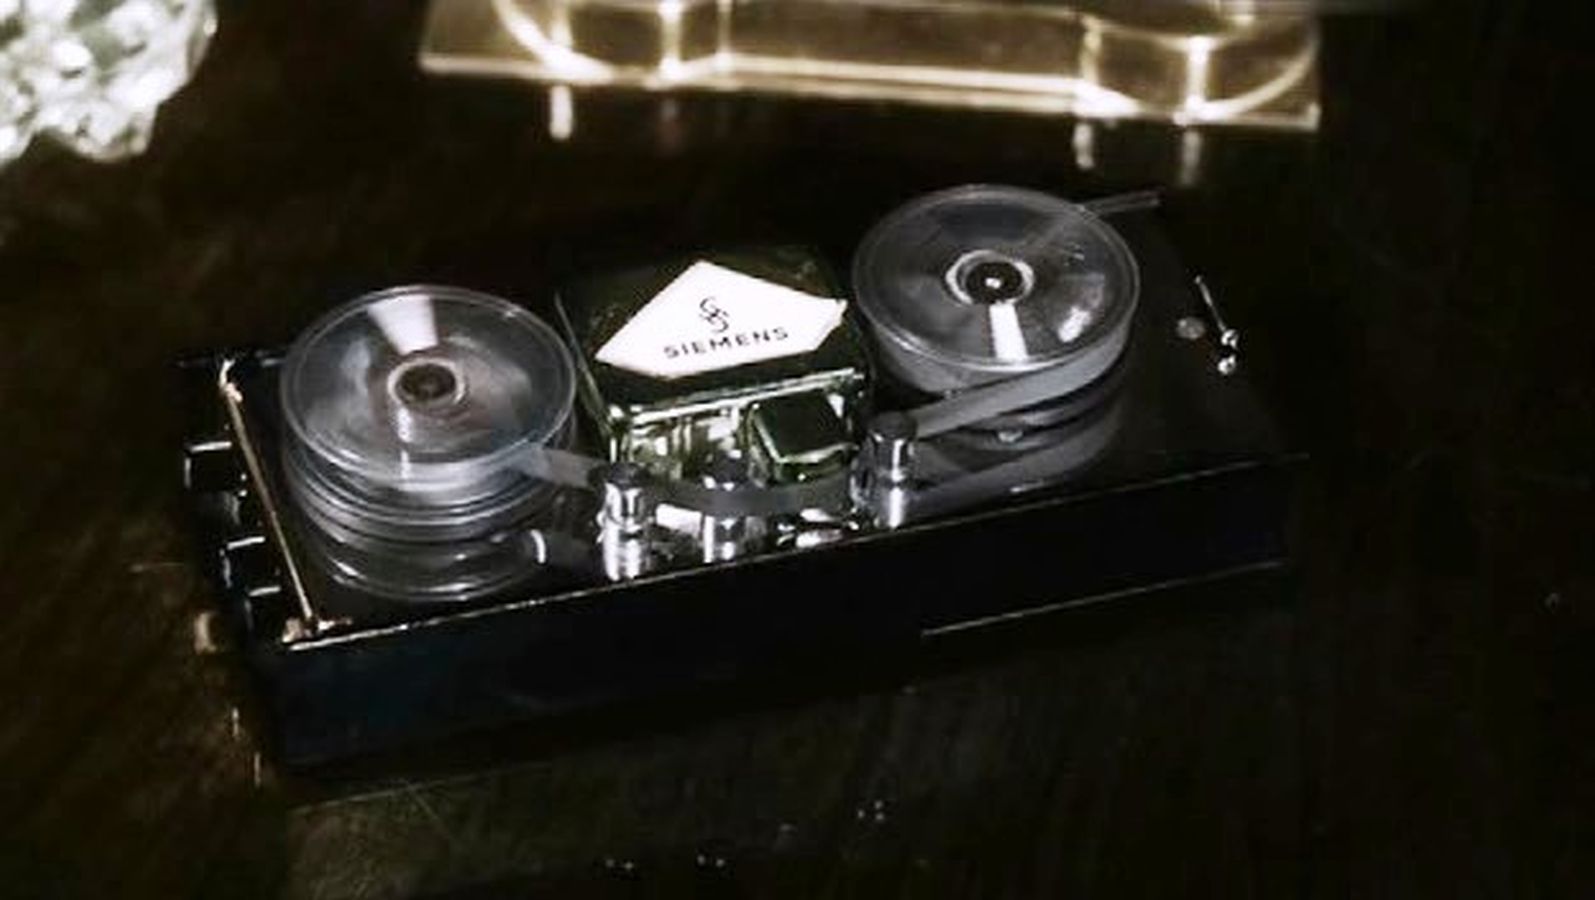 Аудиогаджет специального назначения: диктофон Штирлица, его реальный прототип и смелое историческое моделирование - 9